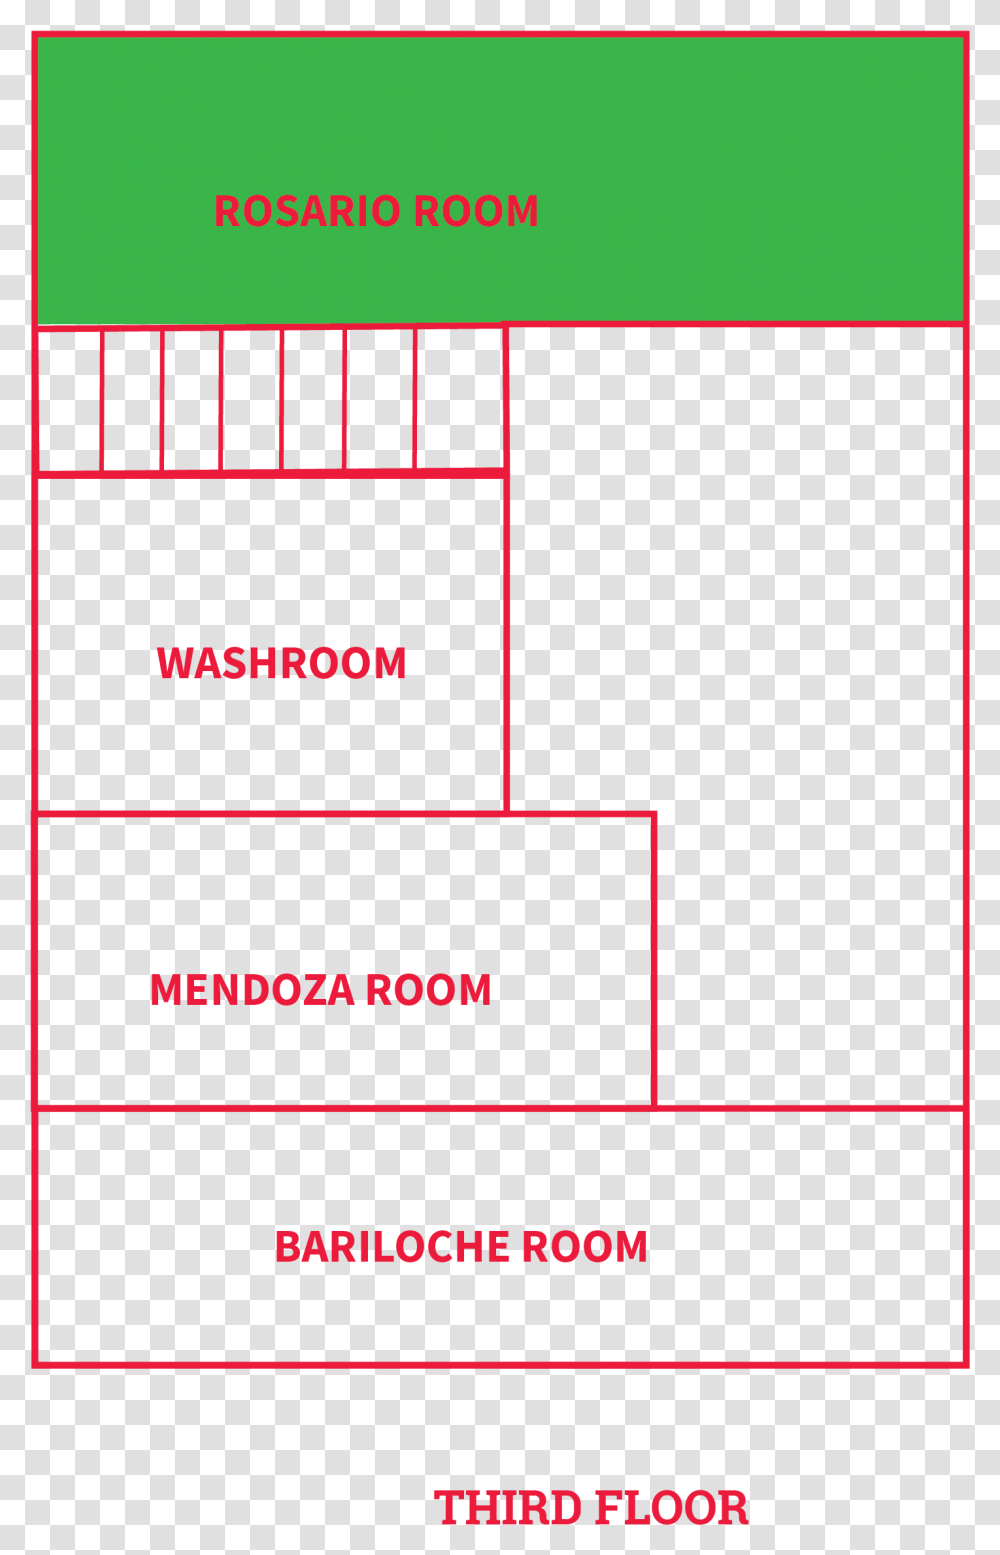 Rosario Floor Plan 01 Carmine, Plot, Diagram, Number Transparent Png